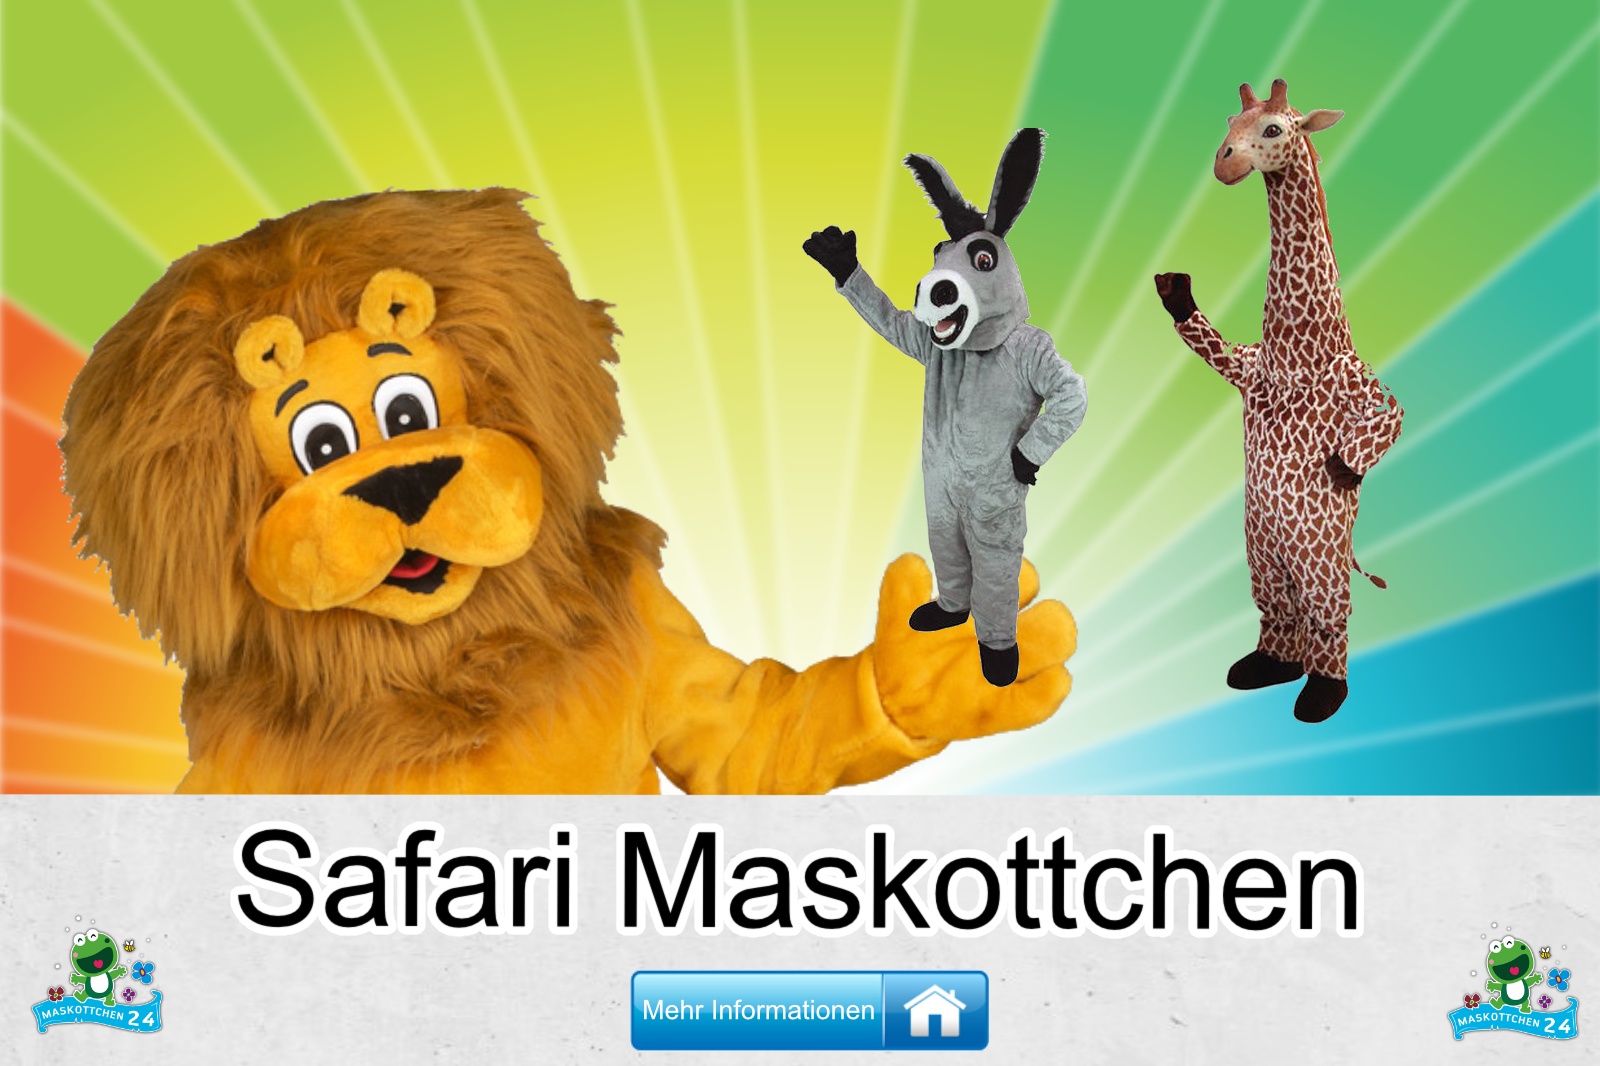 Safari Kostüm kaufen, günstige Produktion / Herstellung